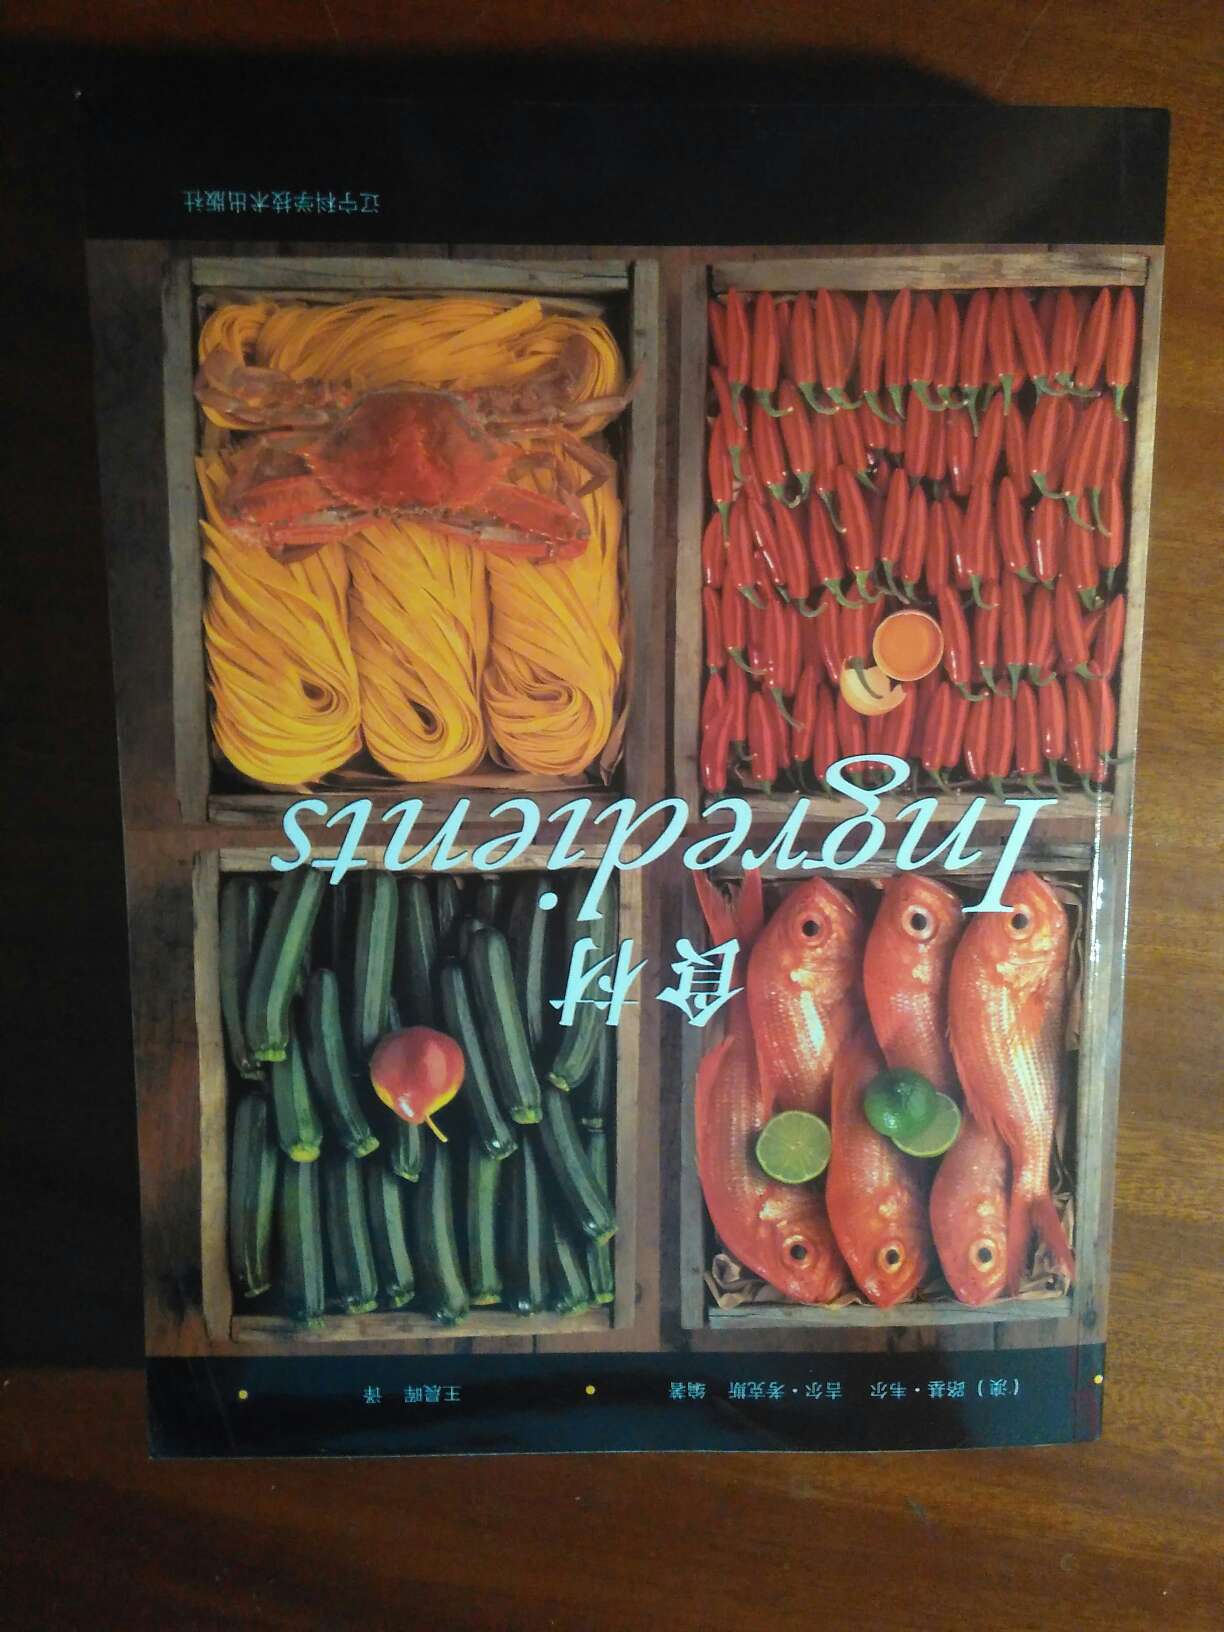 特别好，食材种类多，介绍详细。是一本非常好的书。